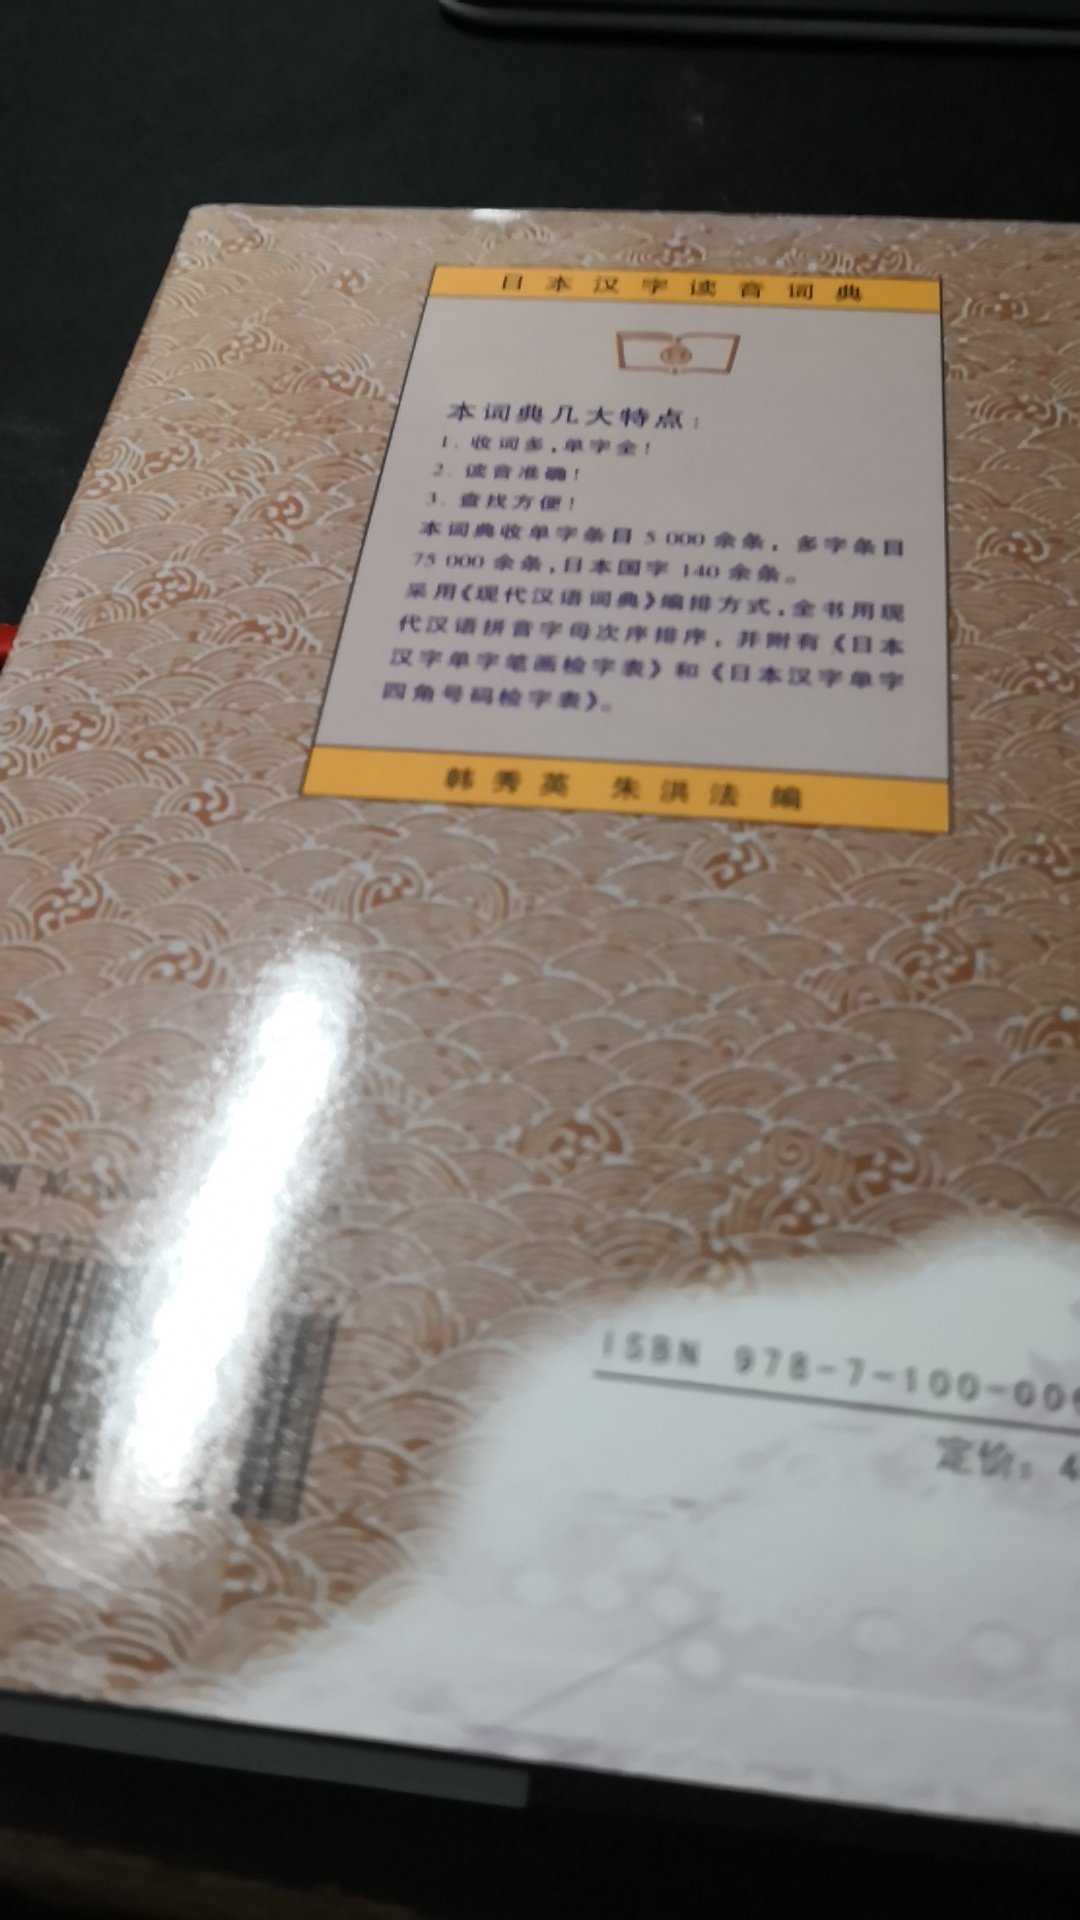 学习日语第二的参考书 是一个重要的工具书 看着还不错吧 内容挺丰富的